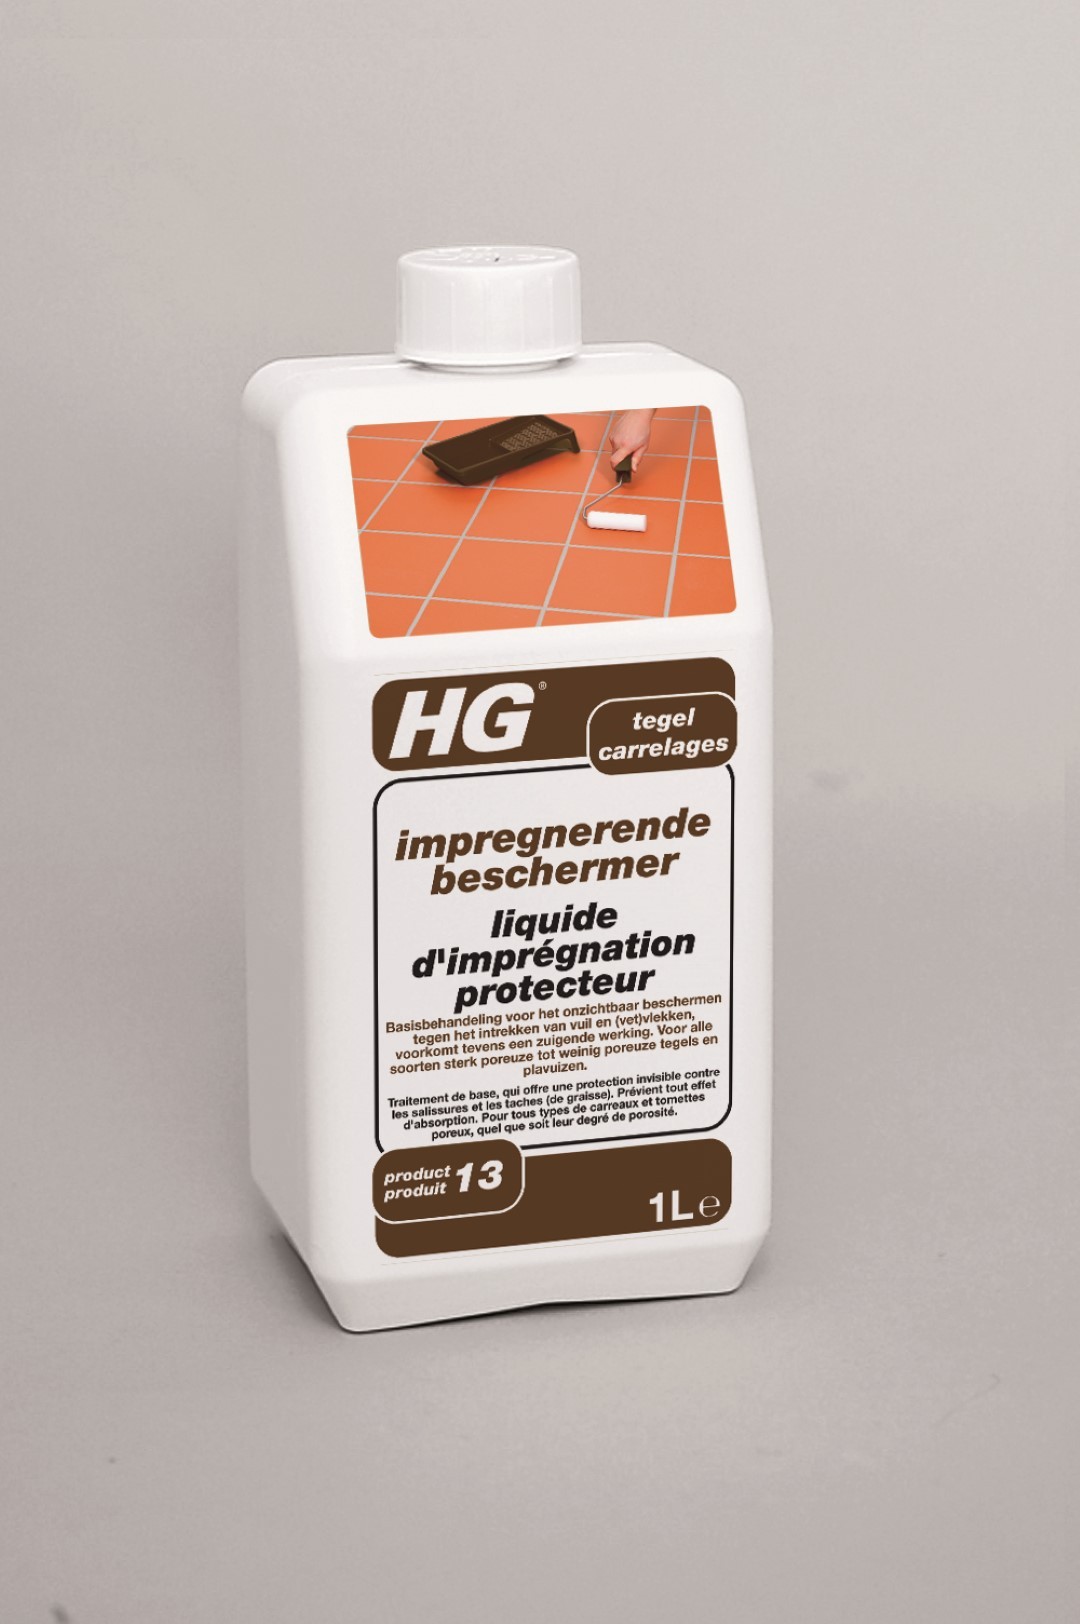 impregnerende beschermer (HG product 13)